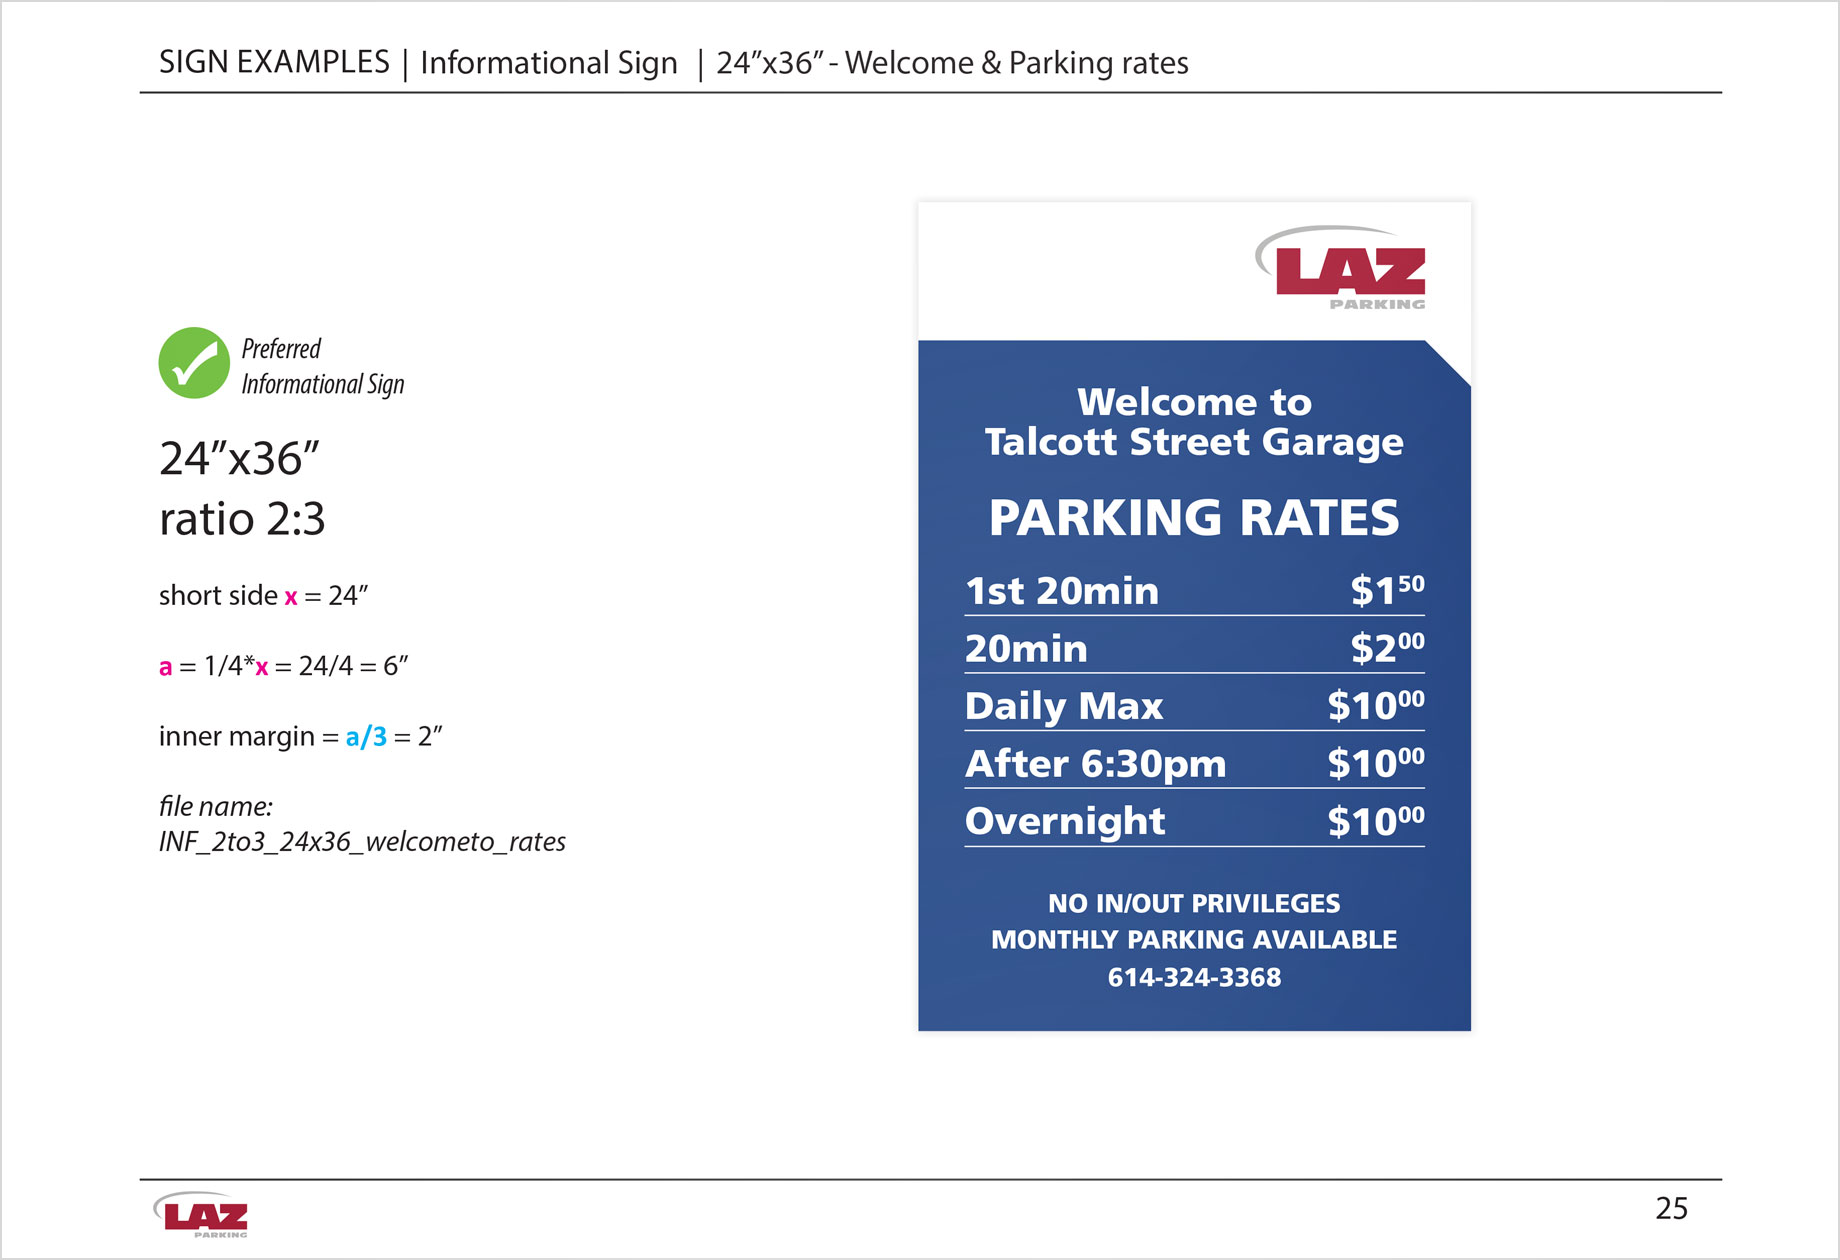 LAZ parking rates